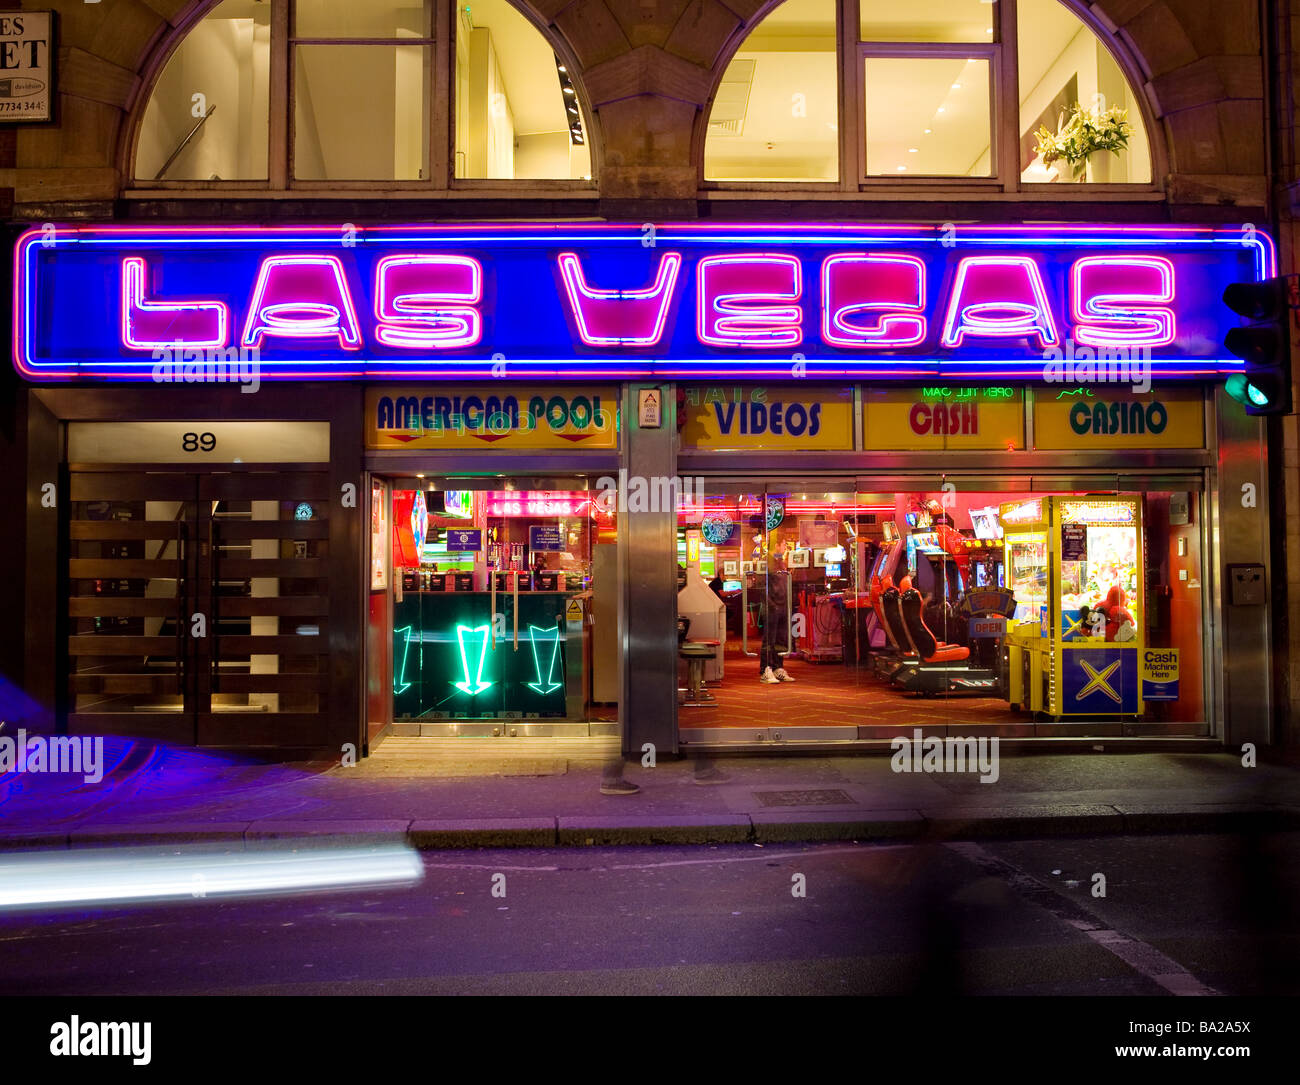 A casino in Soho, London Stock Photo